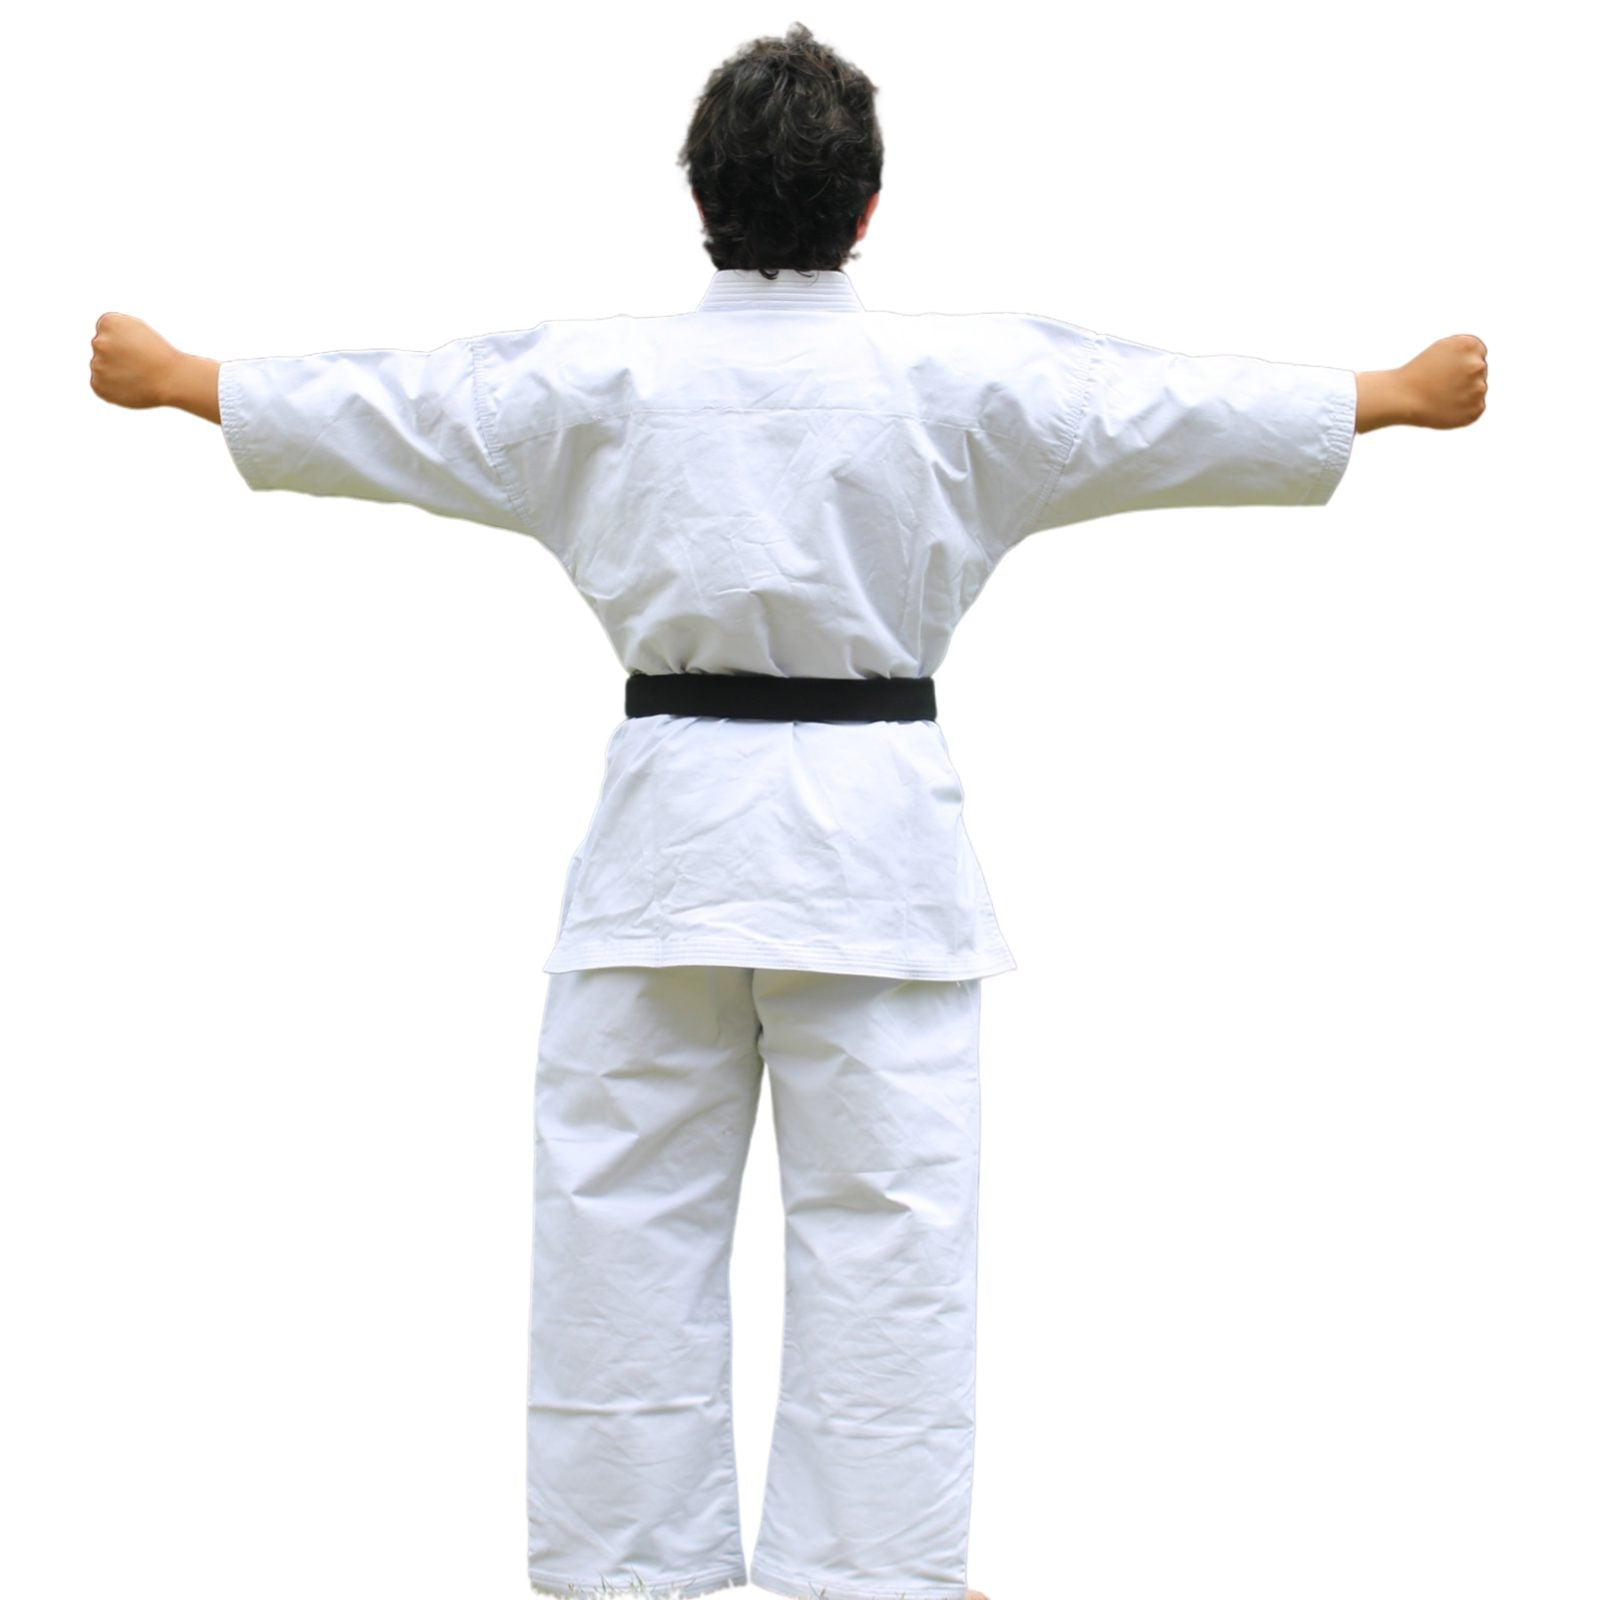 karate-uniform-bleached-plain-cotton-canvas